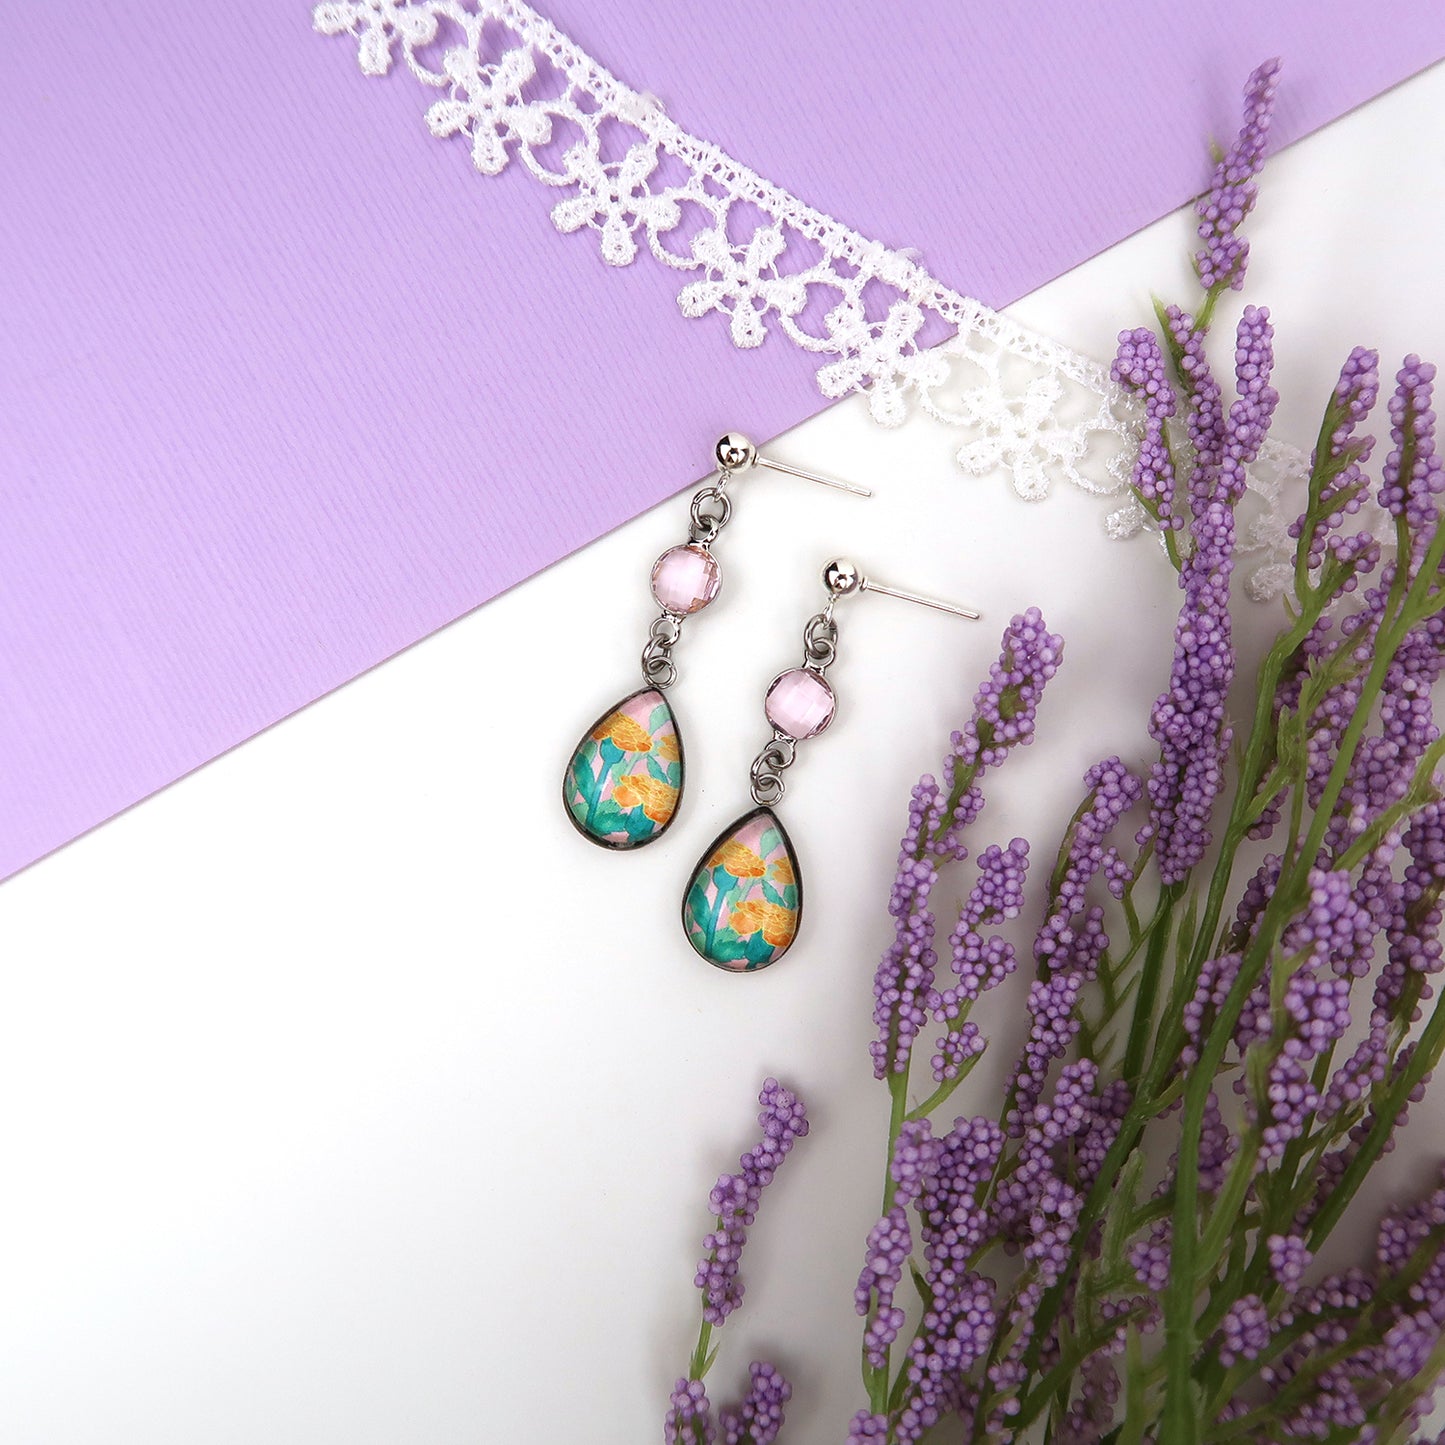 October Birth Flower Earrings - Marigolds